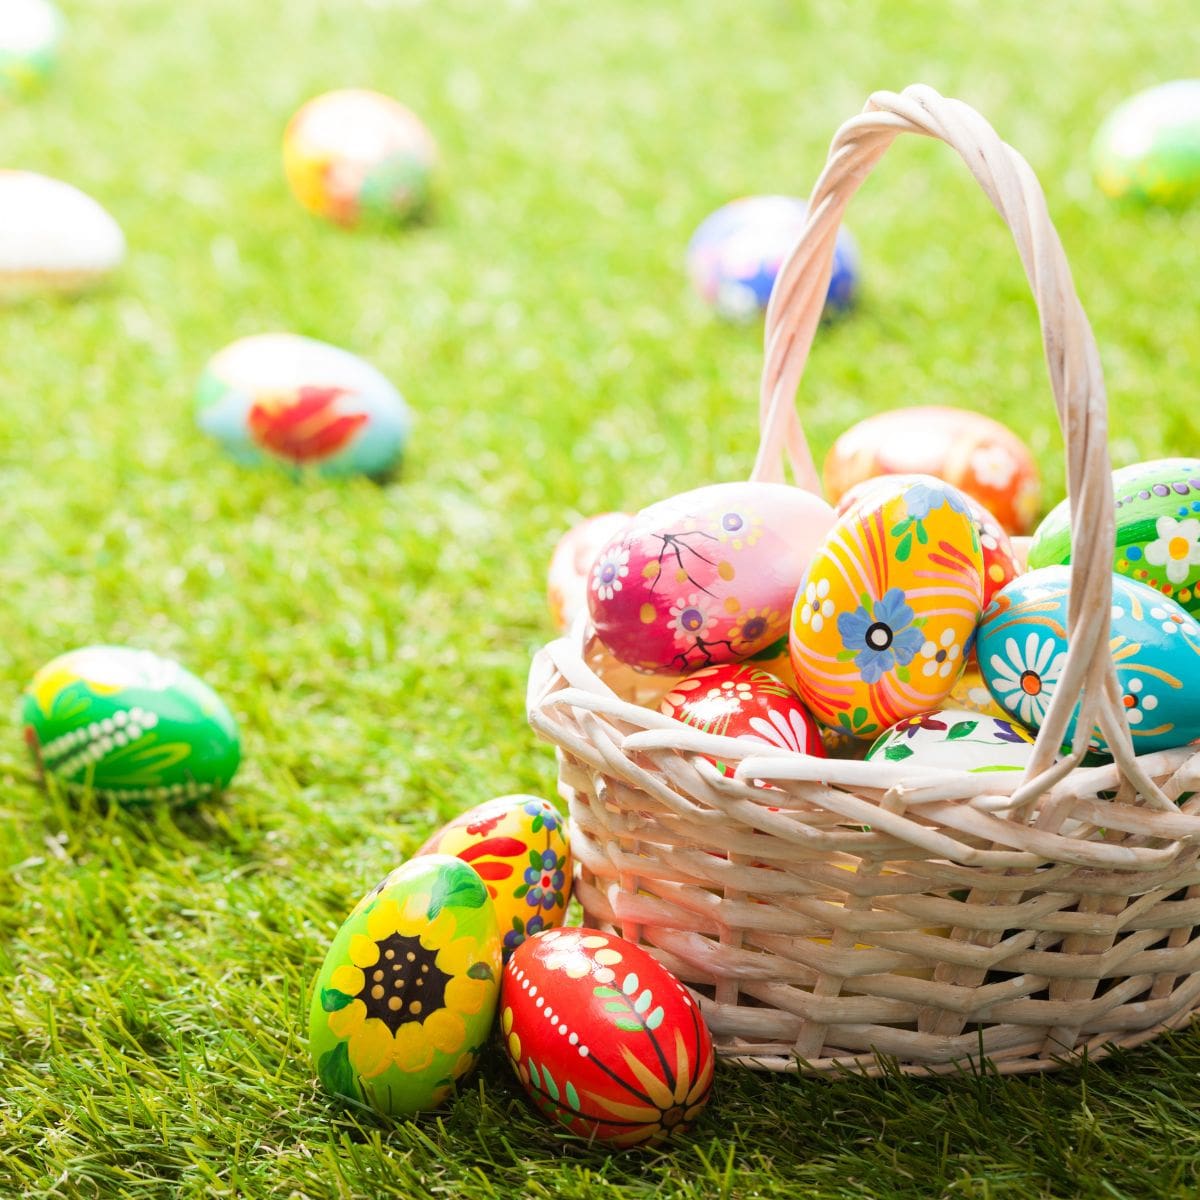 Tustin Easter Celebration & Egg Hunt